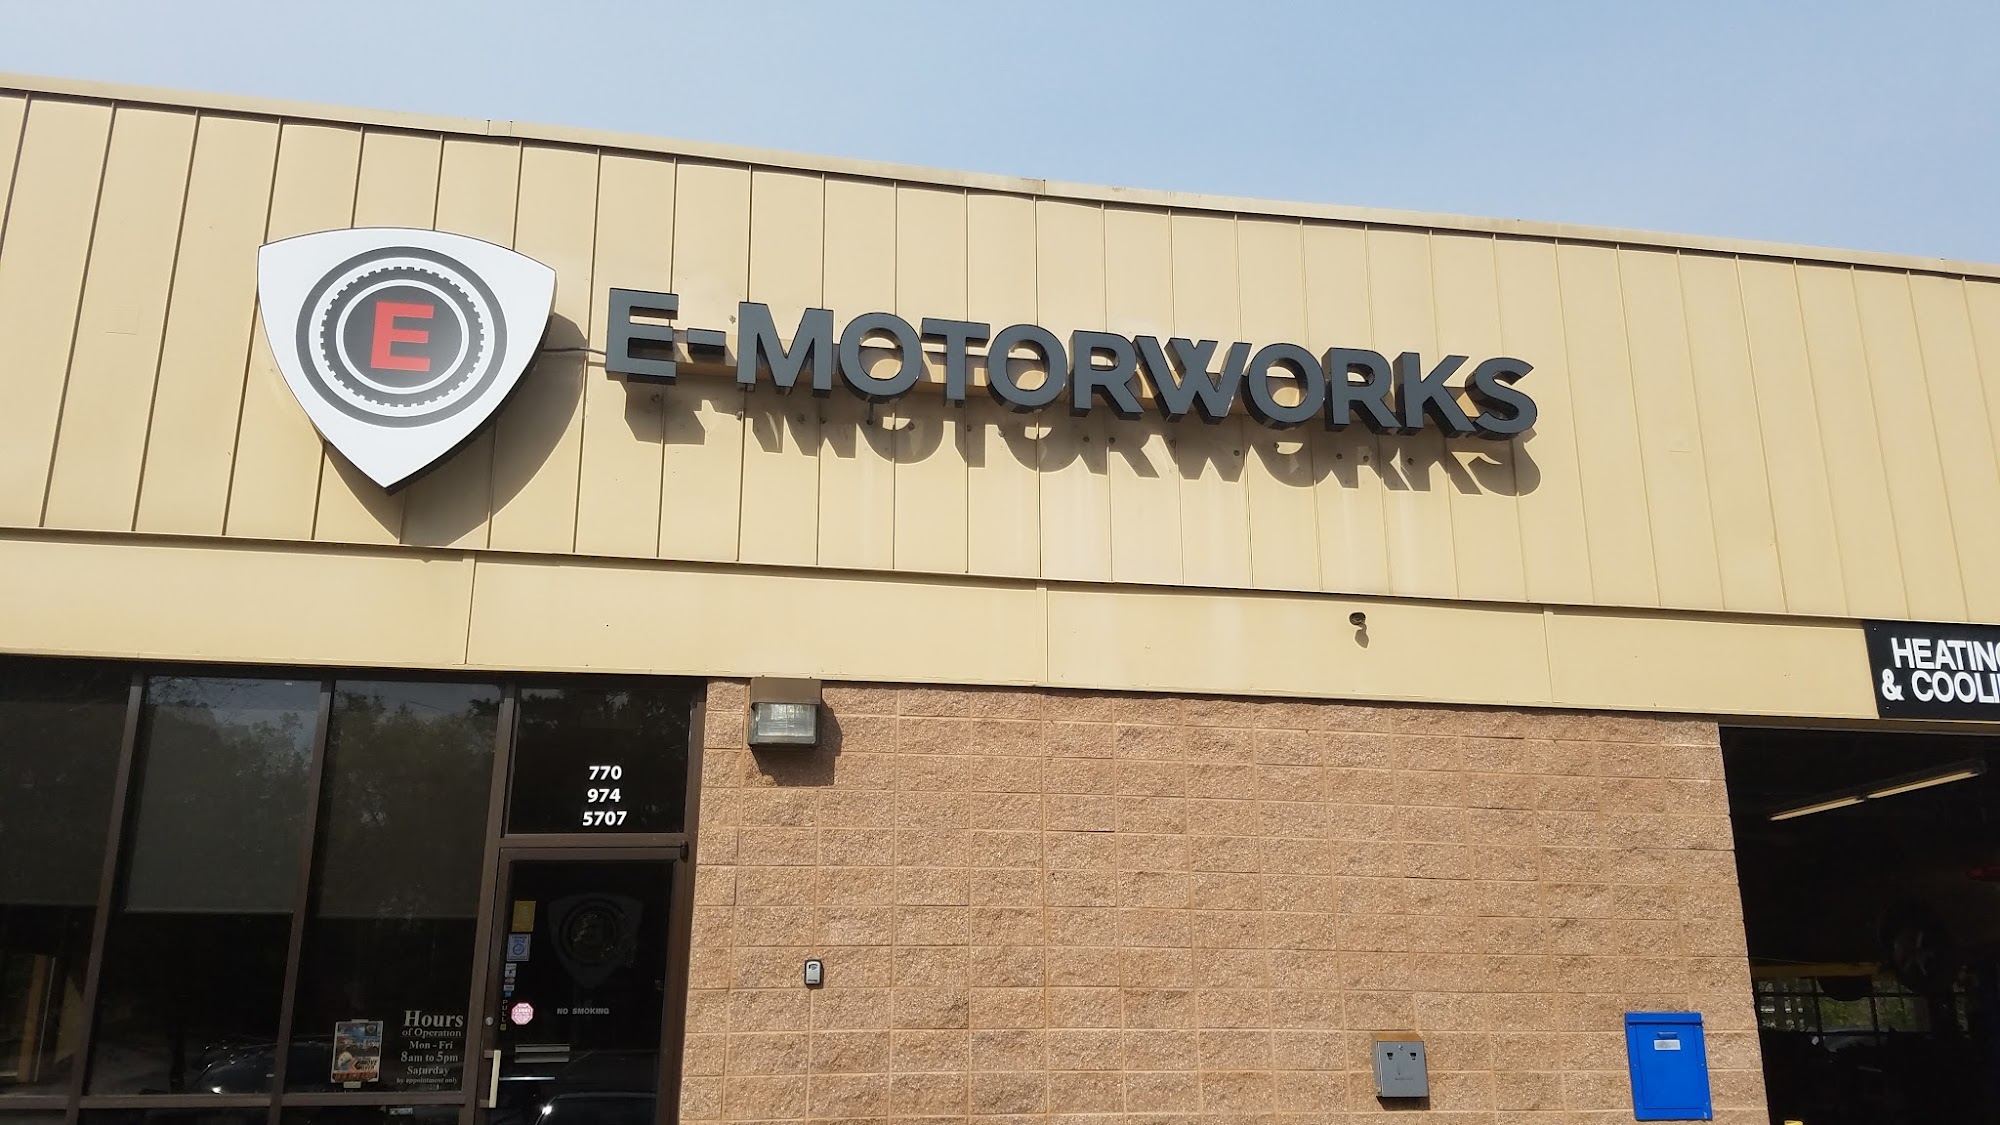 E-Motorworks